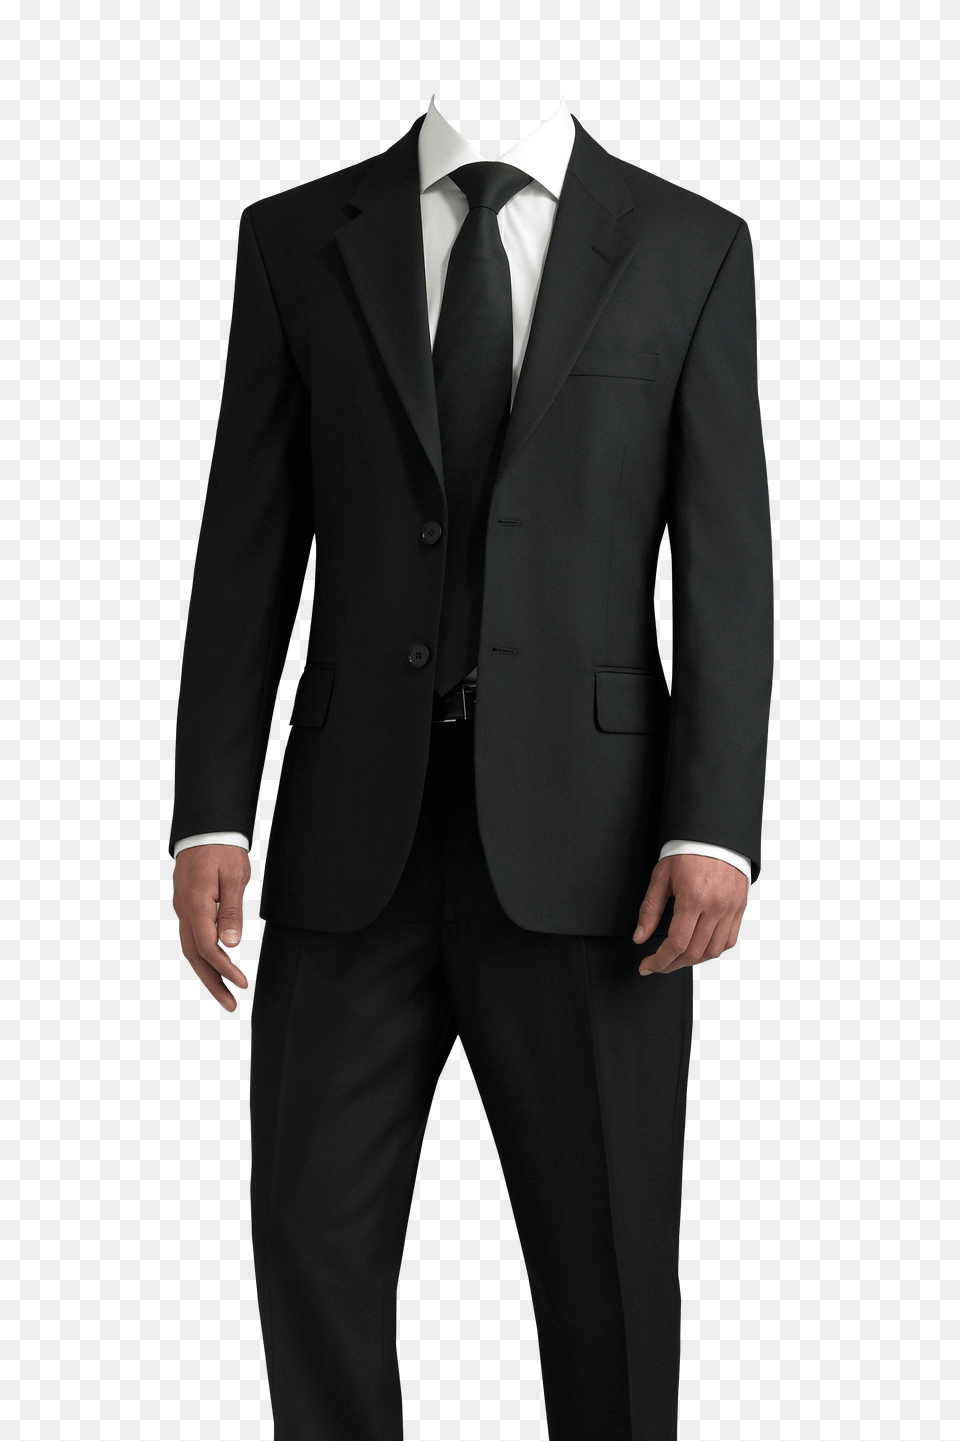 Pngpix Com Suit Image, Clothing, Formal Wear, Tuxedo, Coat Free Transparent Png